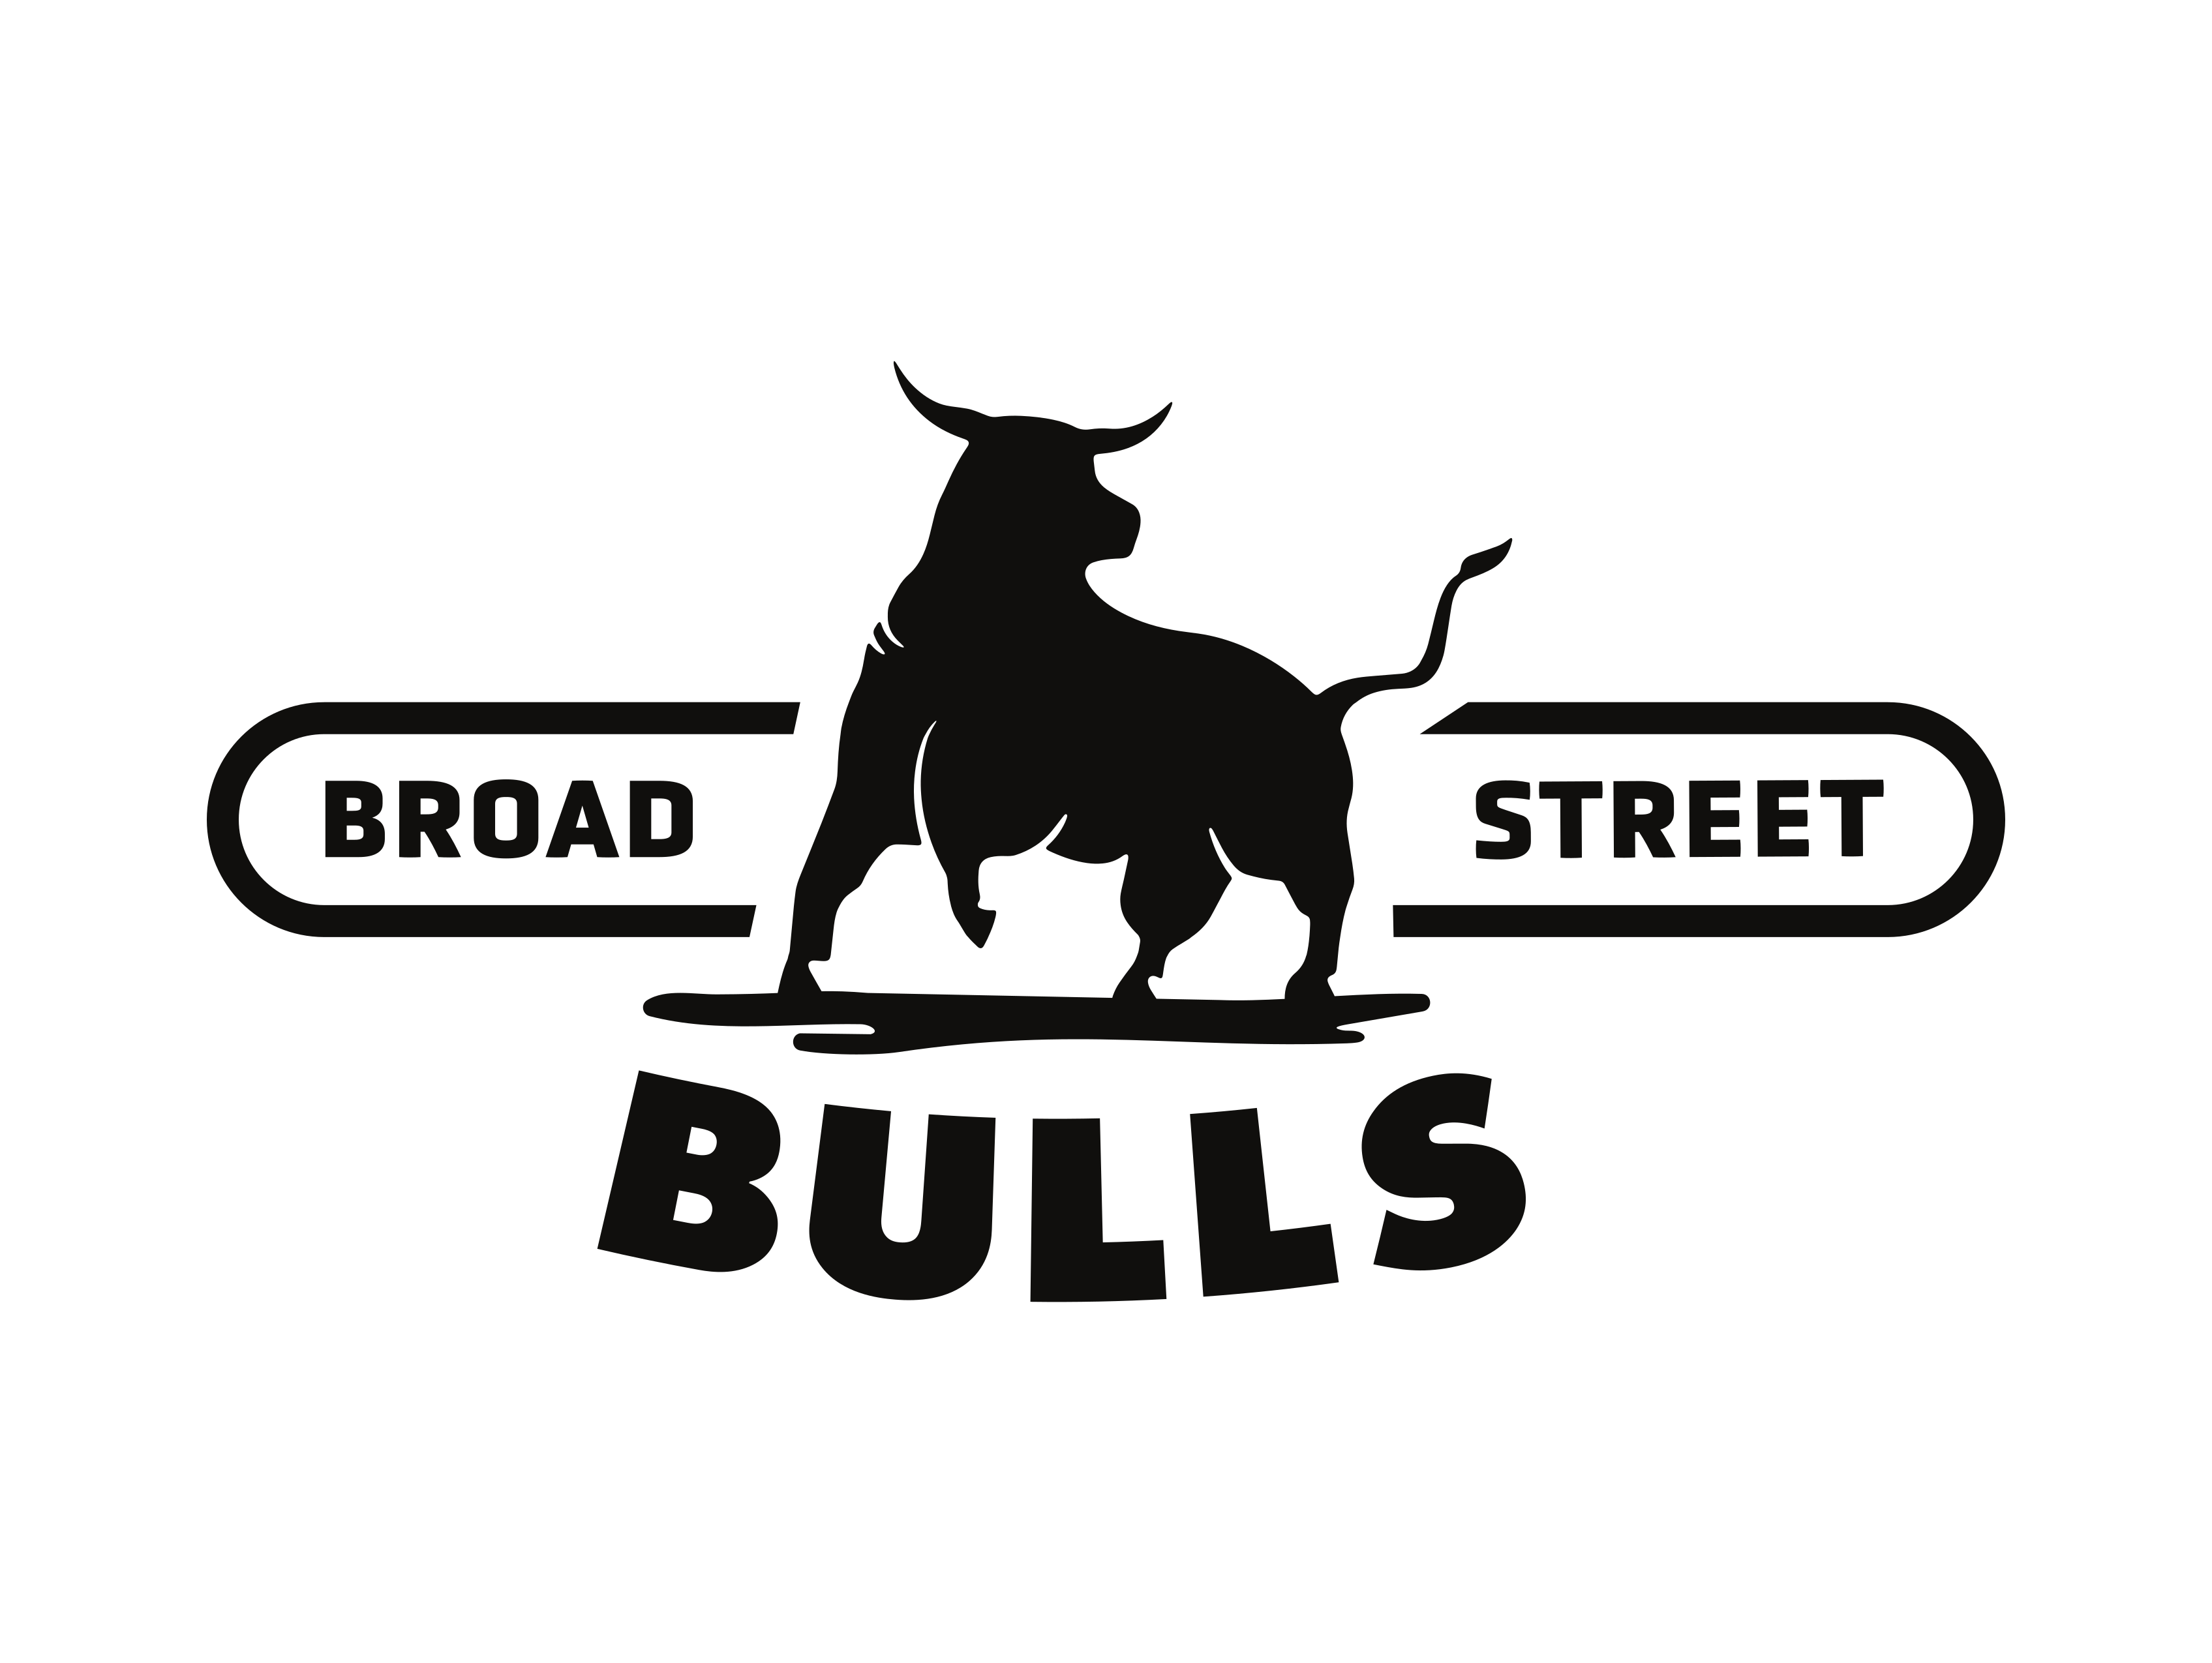 Broad Street Bulls